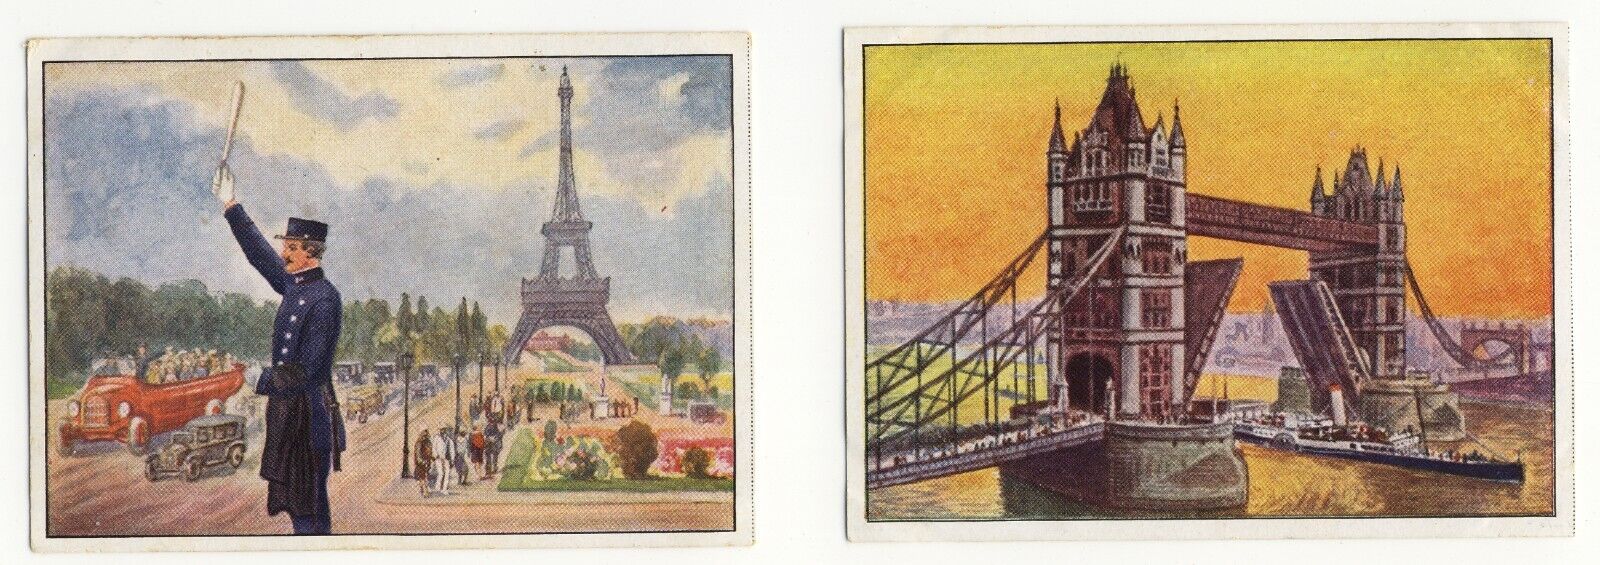 Echte Wagner 1929 Monuments Paris Eiffel Tower London Tower Bridge 2 cards VG-EX